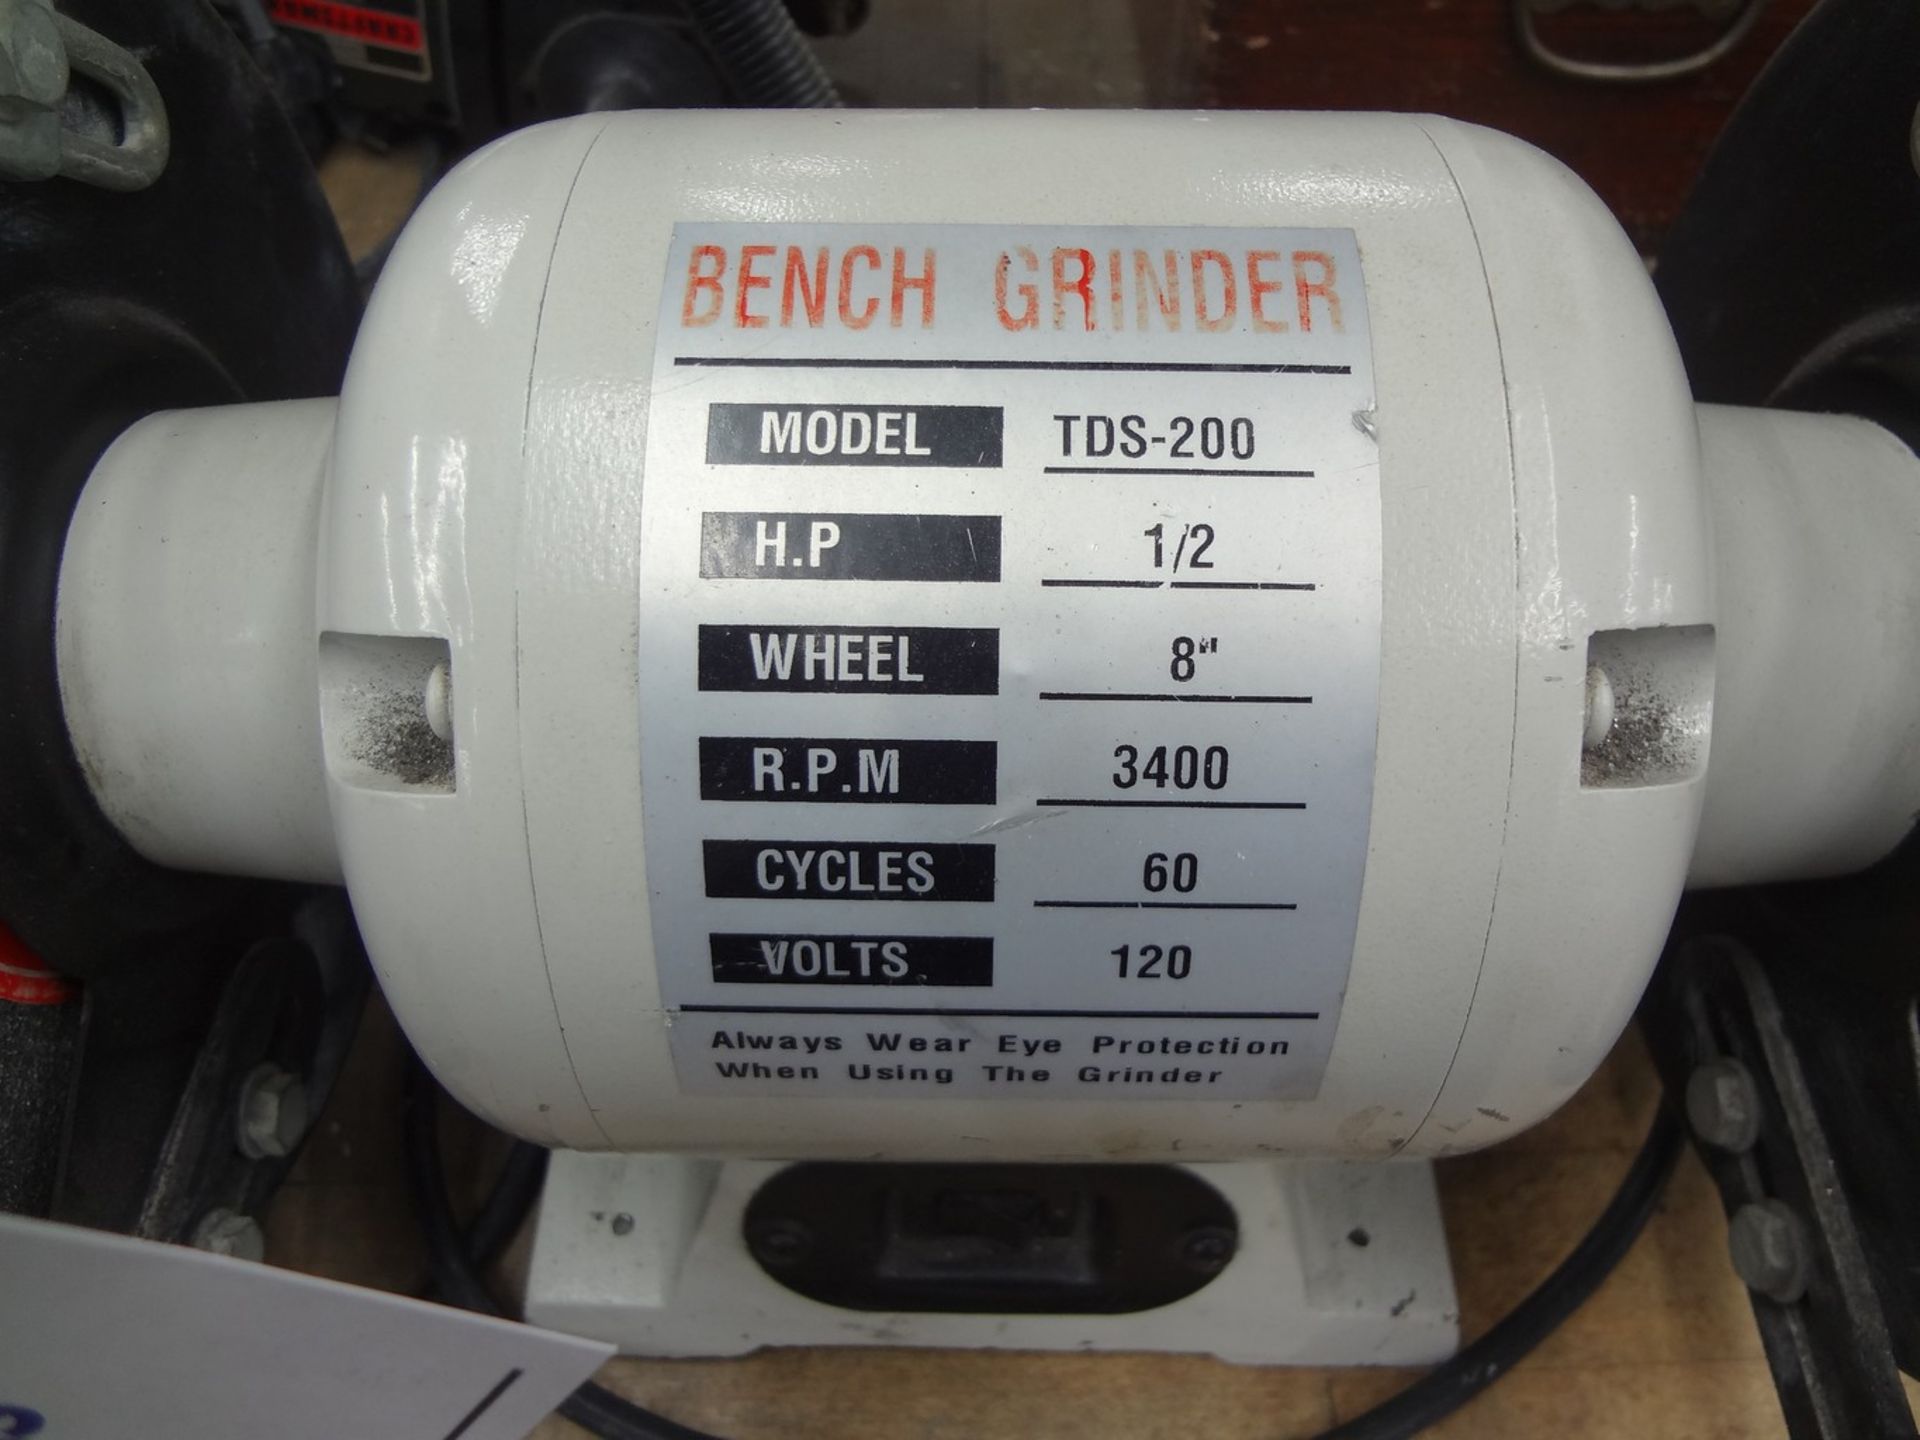 8" Bench Grinder Model TDS-200 Bench Type Grinder - Image 2 of 2